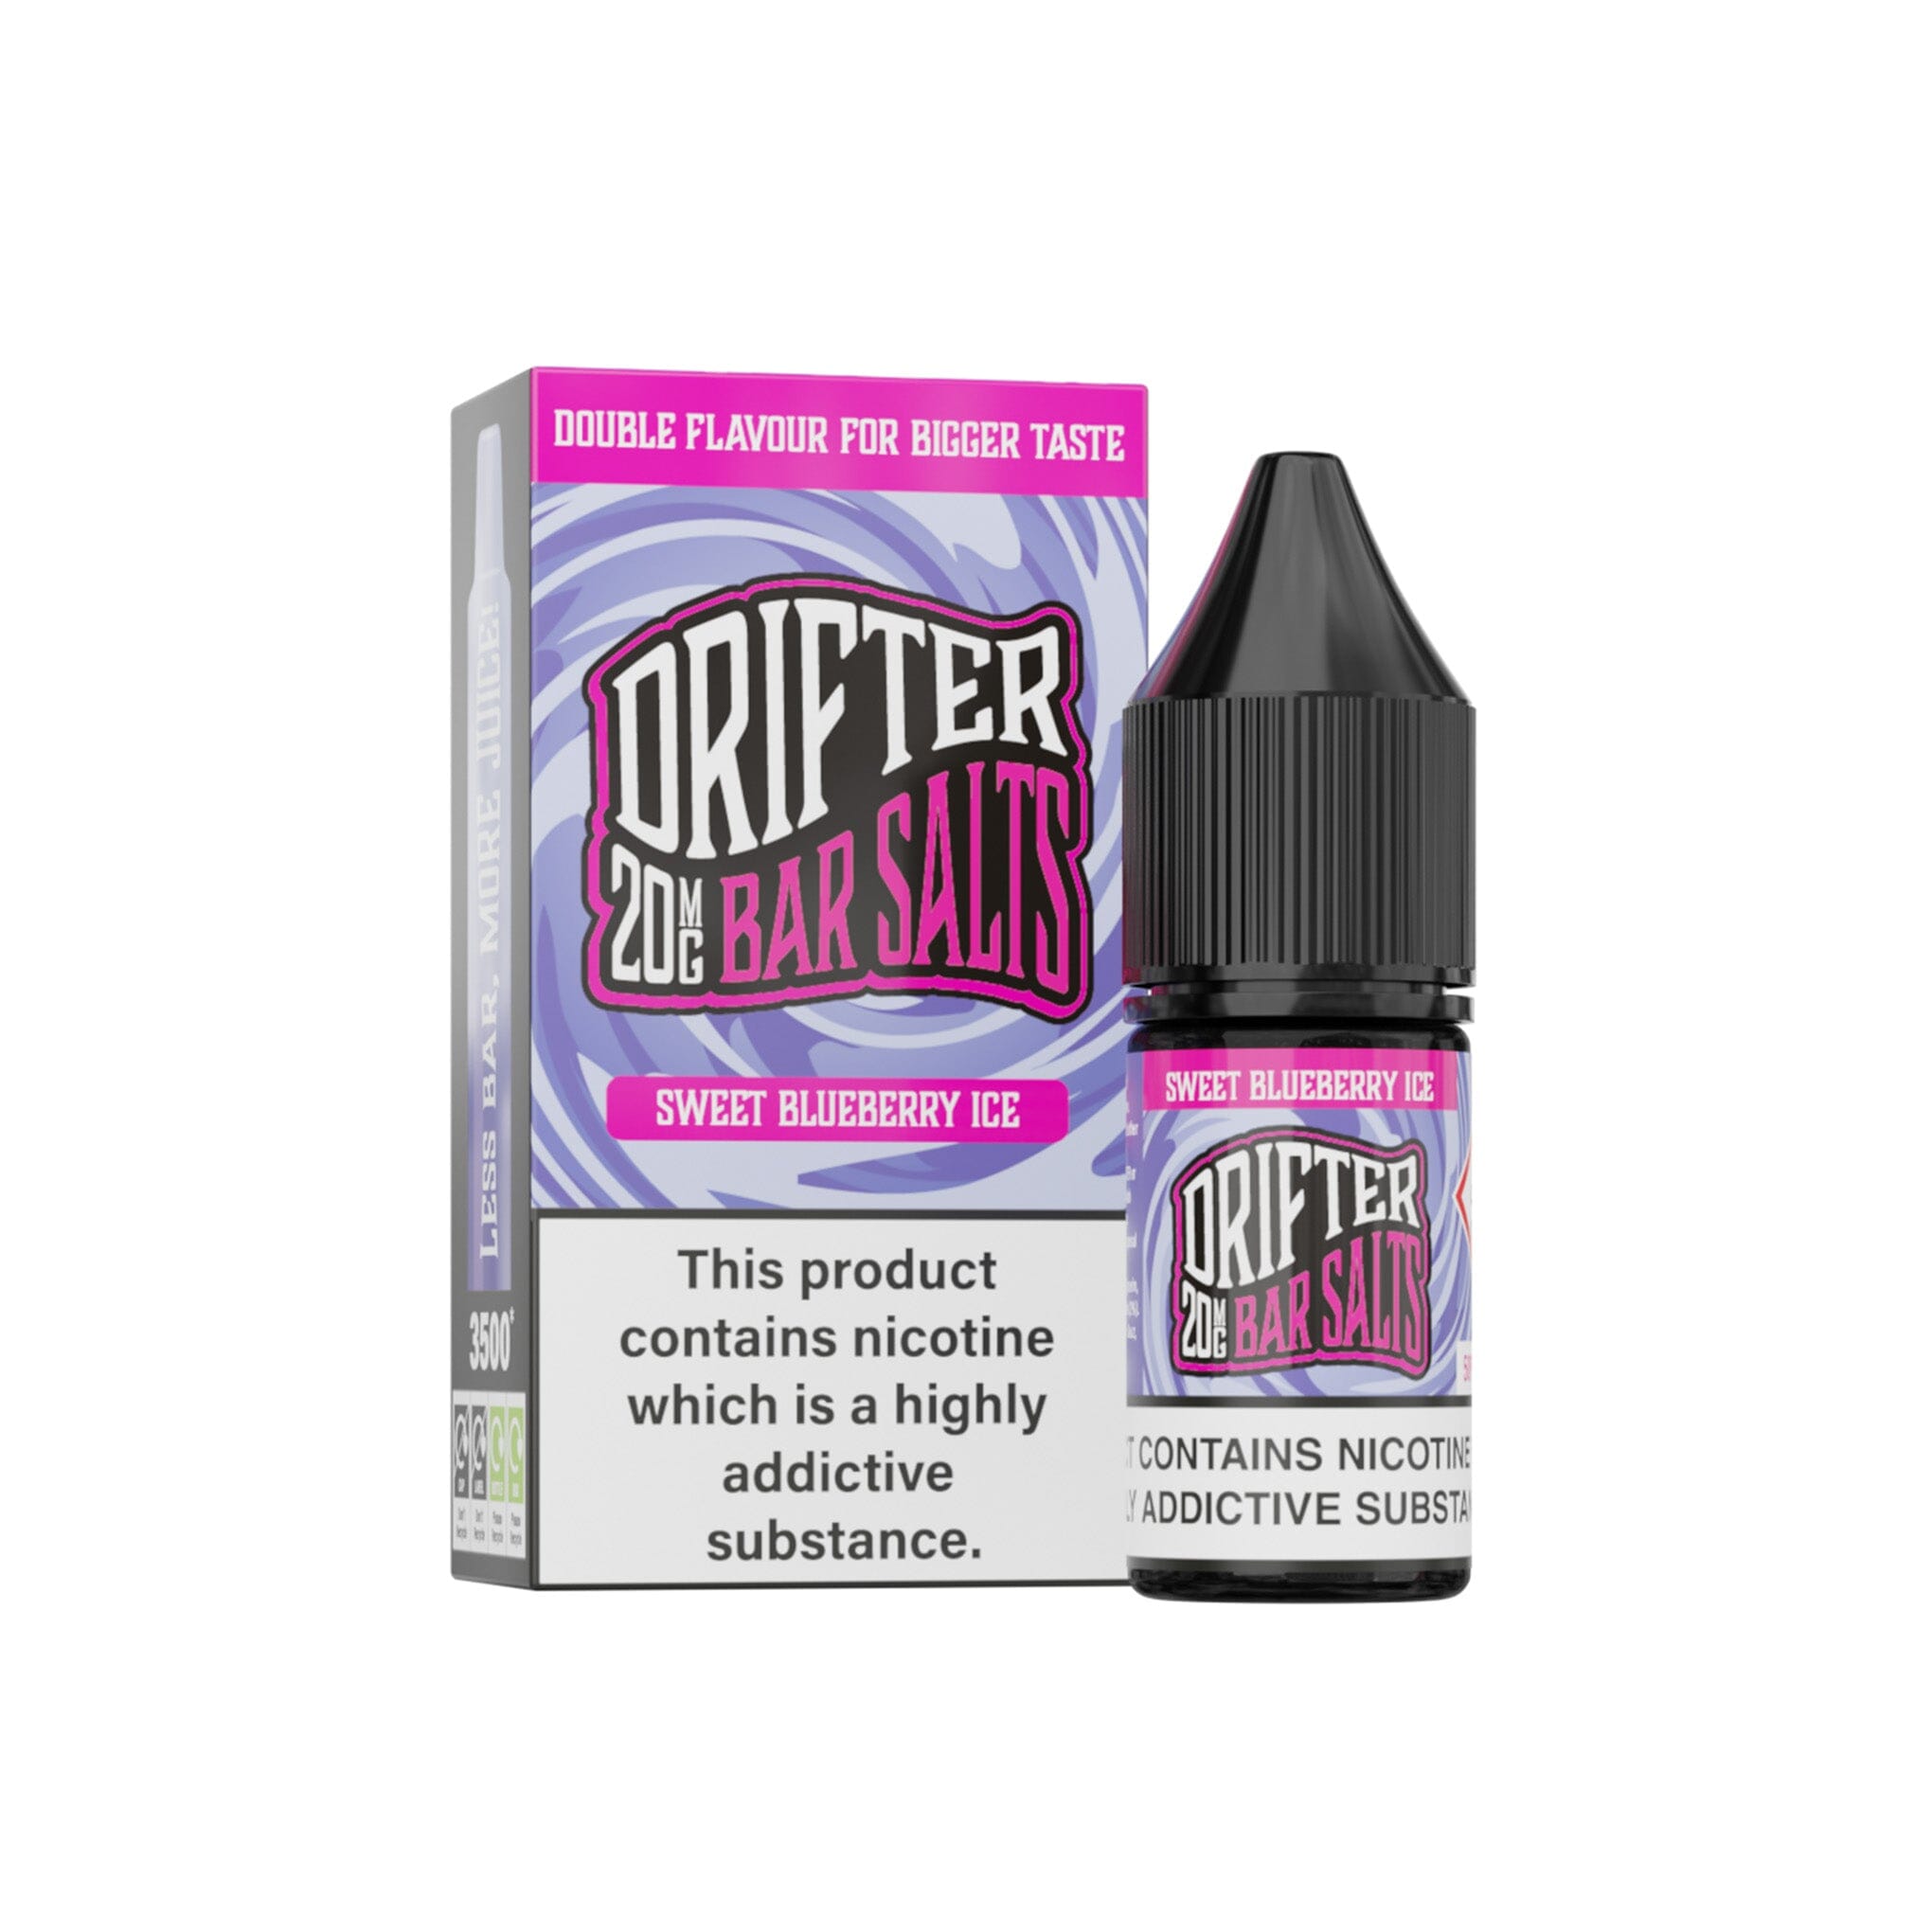 Drifter Bar Salt E-Liquid Sweet Blueberry Ice 20MG - High Nicotine 